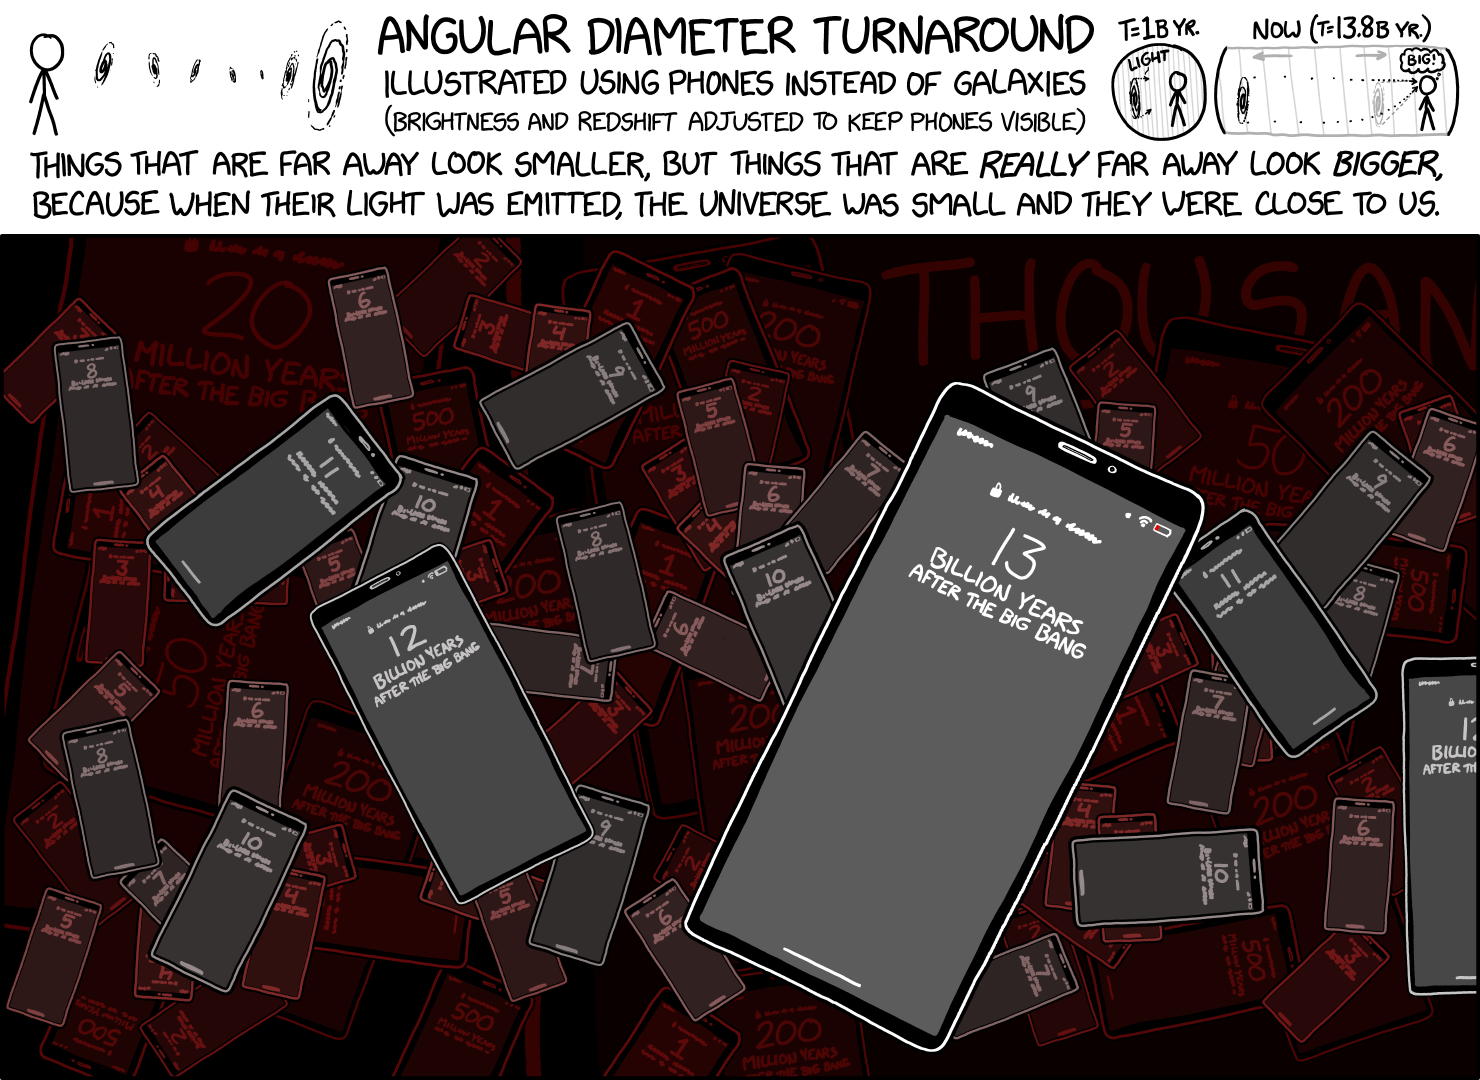 IMAGE(https://imgs.xkcd.com/comics/angular_diameter_turnaround_2x.png)